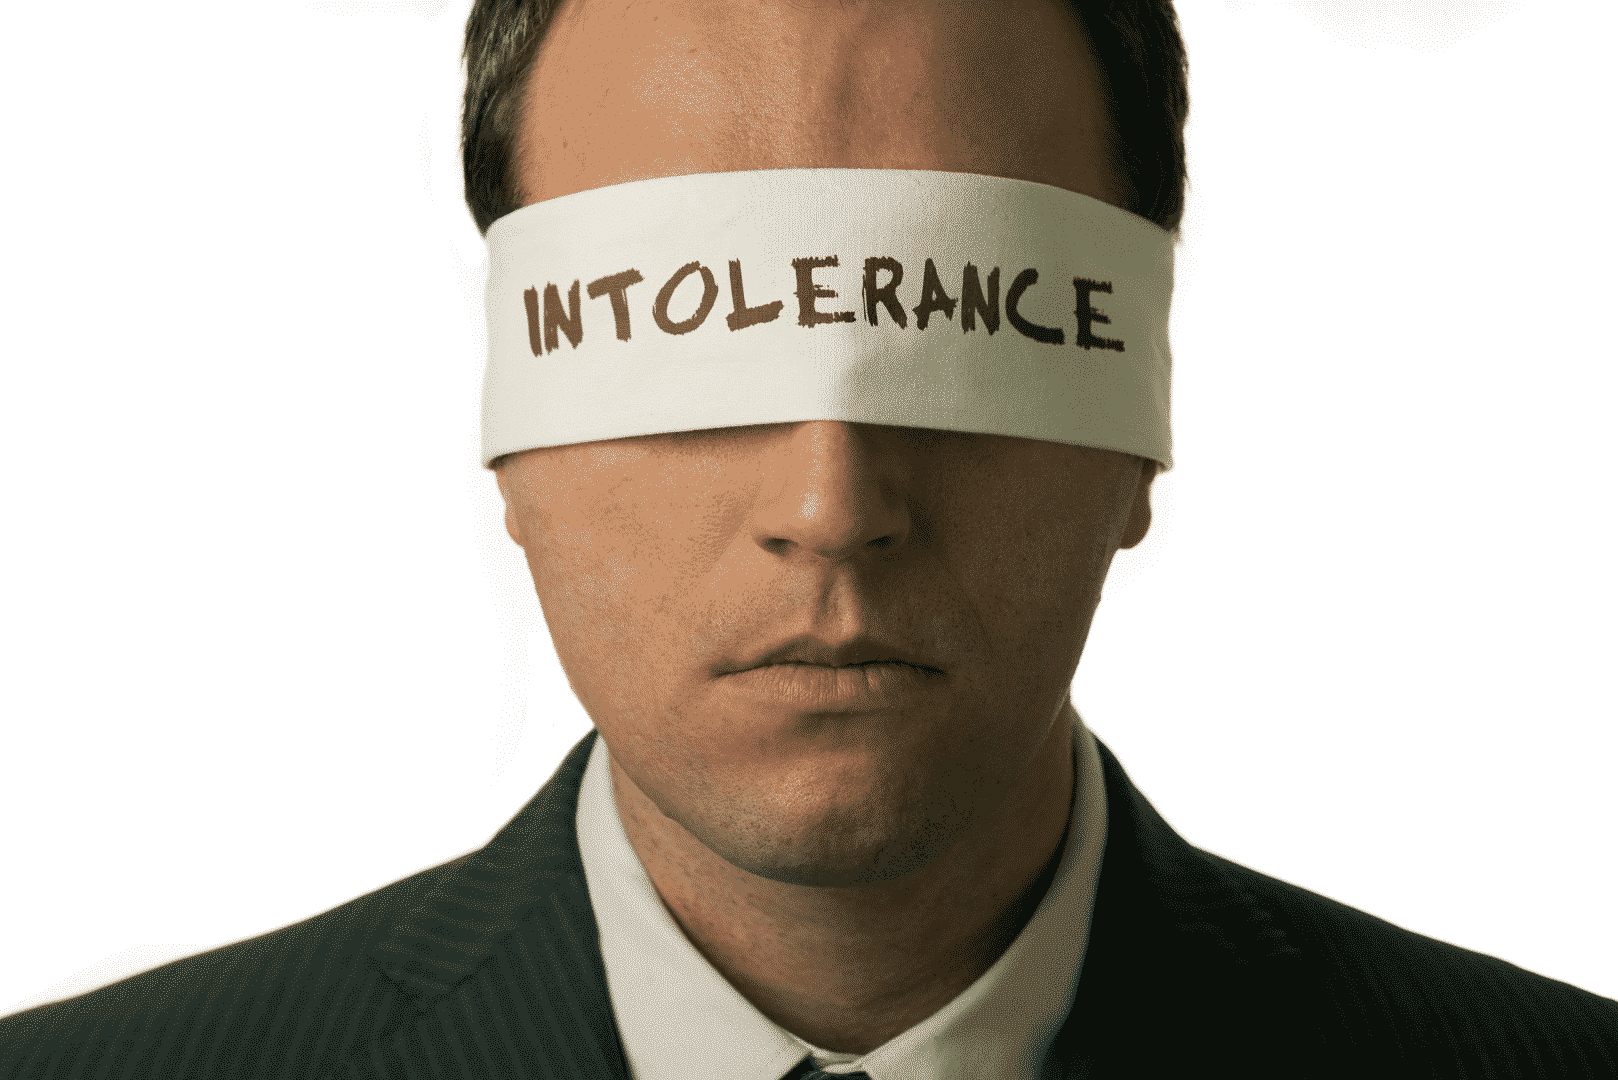 Um homem de terno com uma venda nos olhos escrita "intolerance"